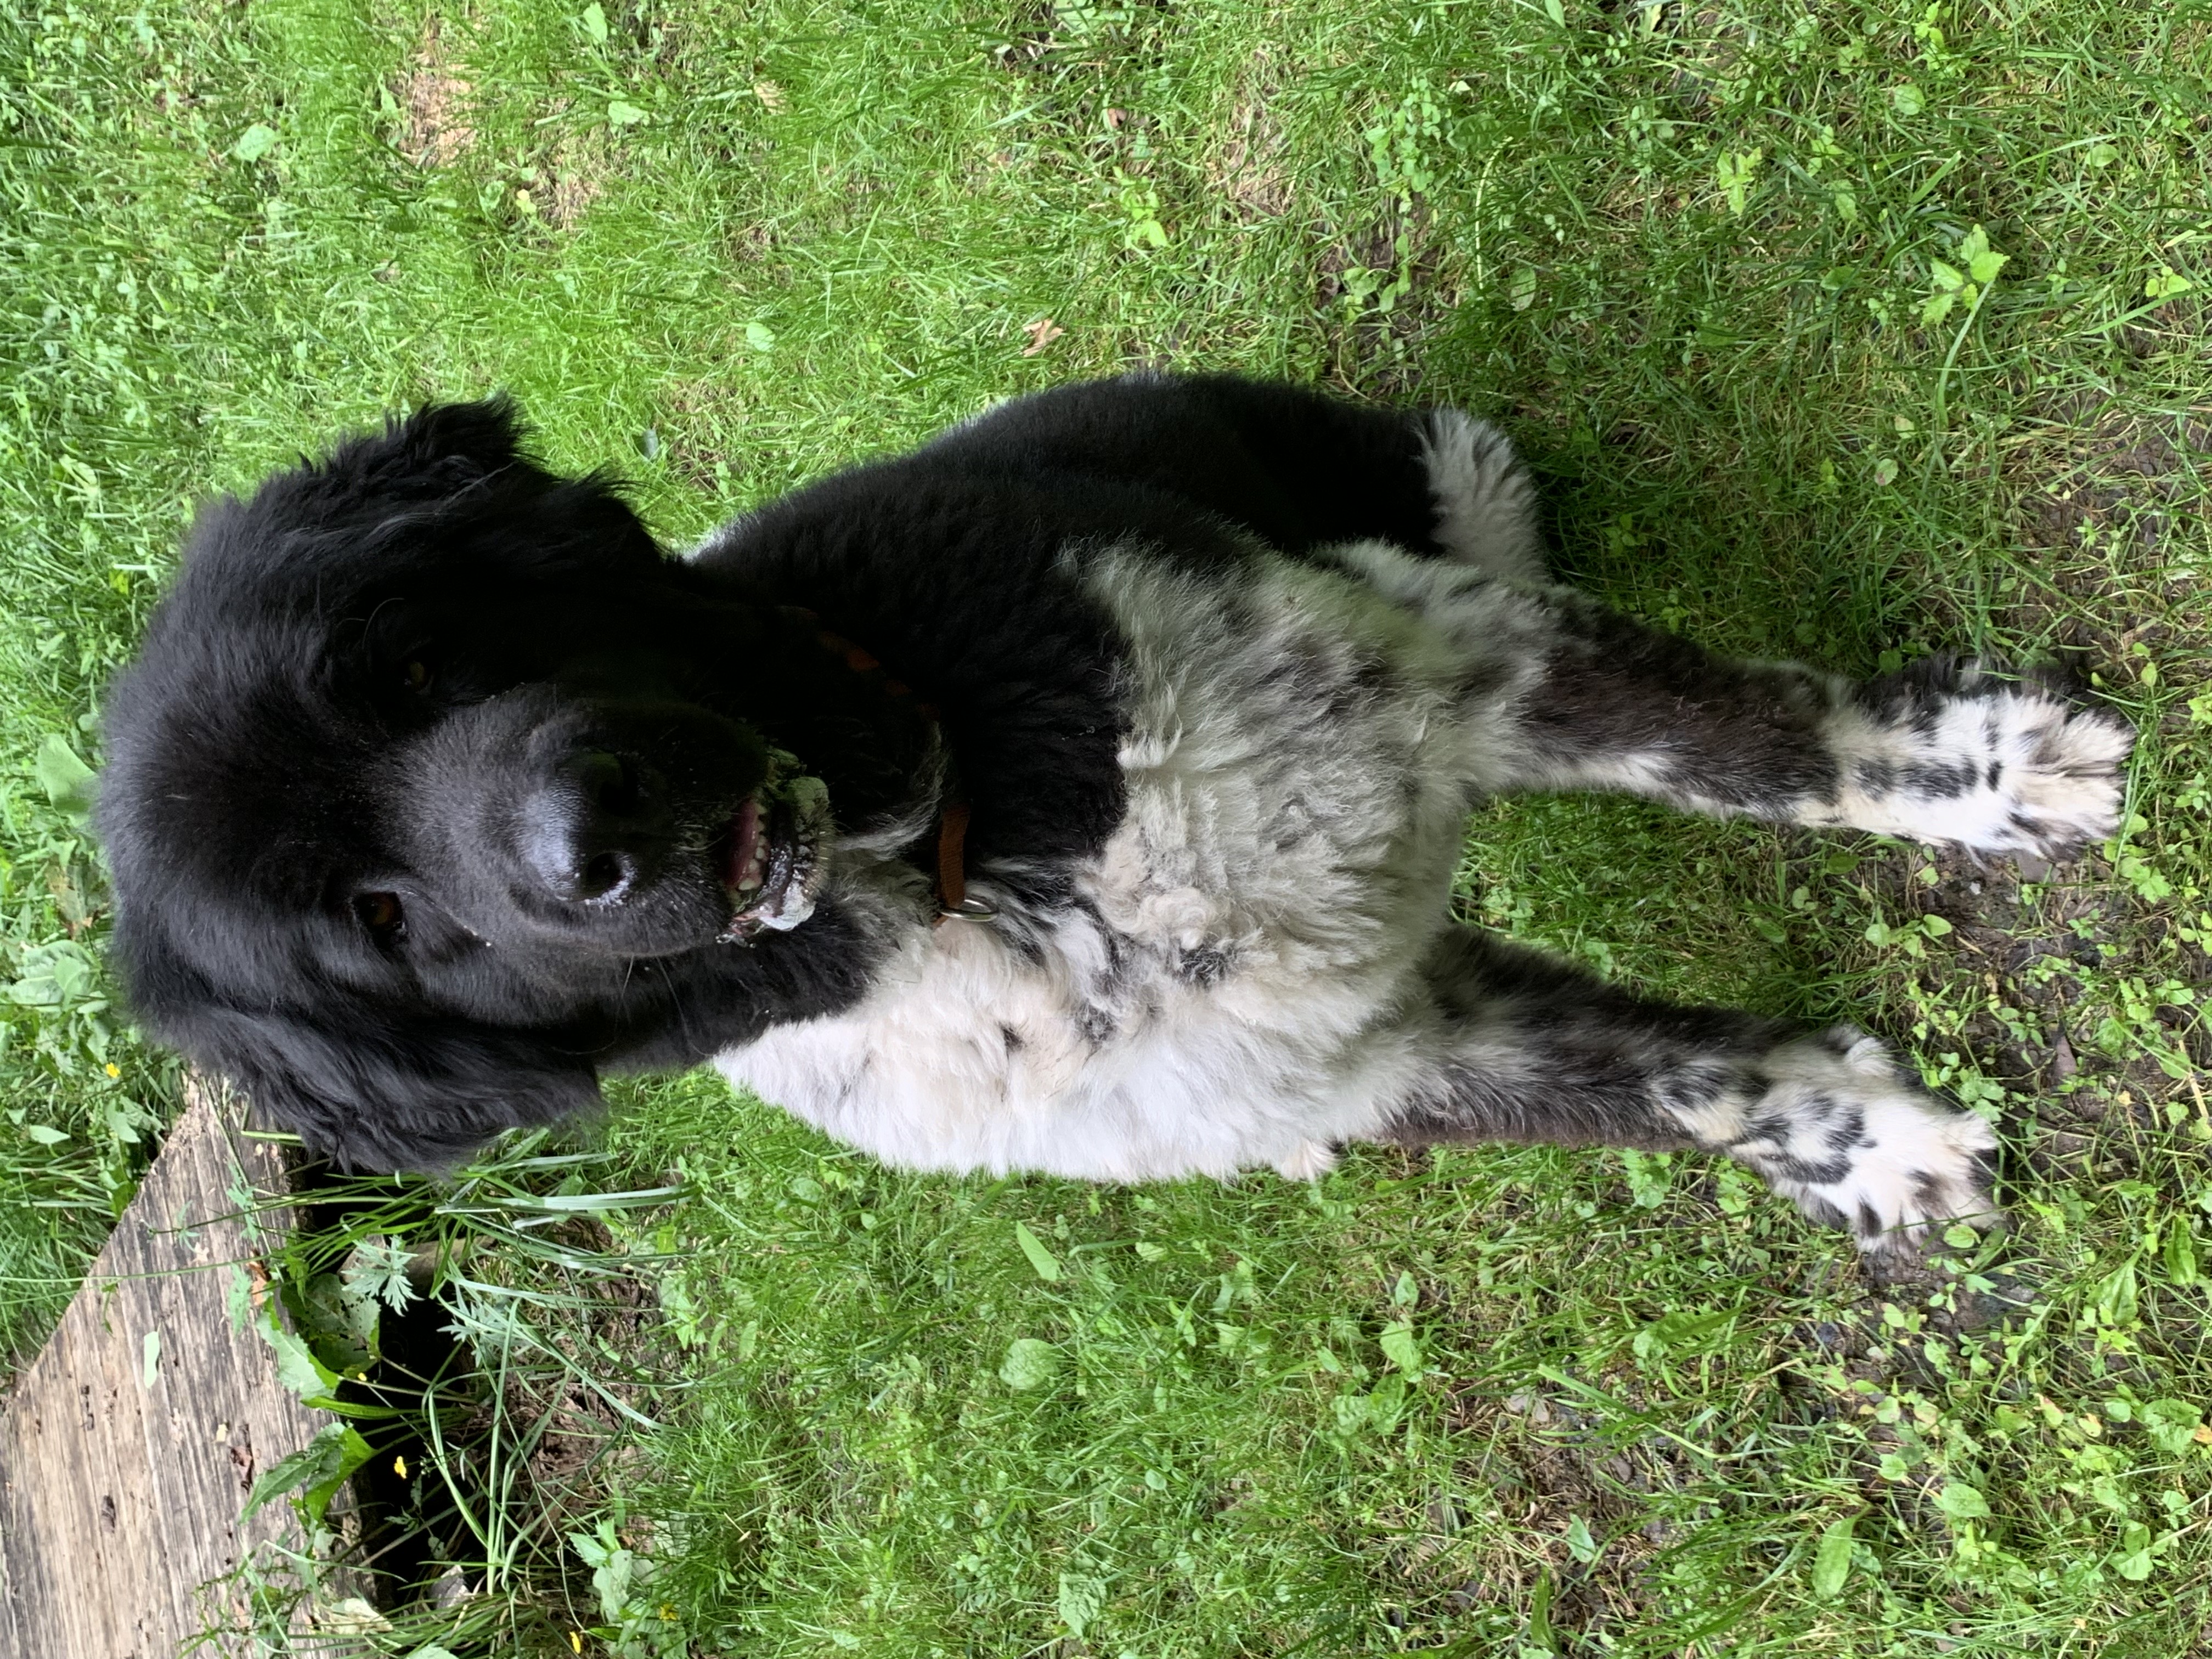 A black and white new foundland dog